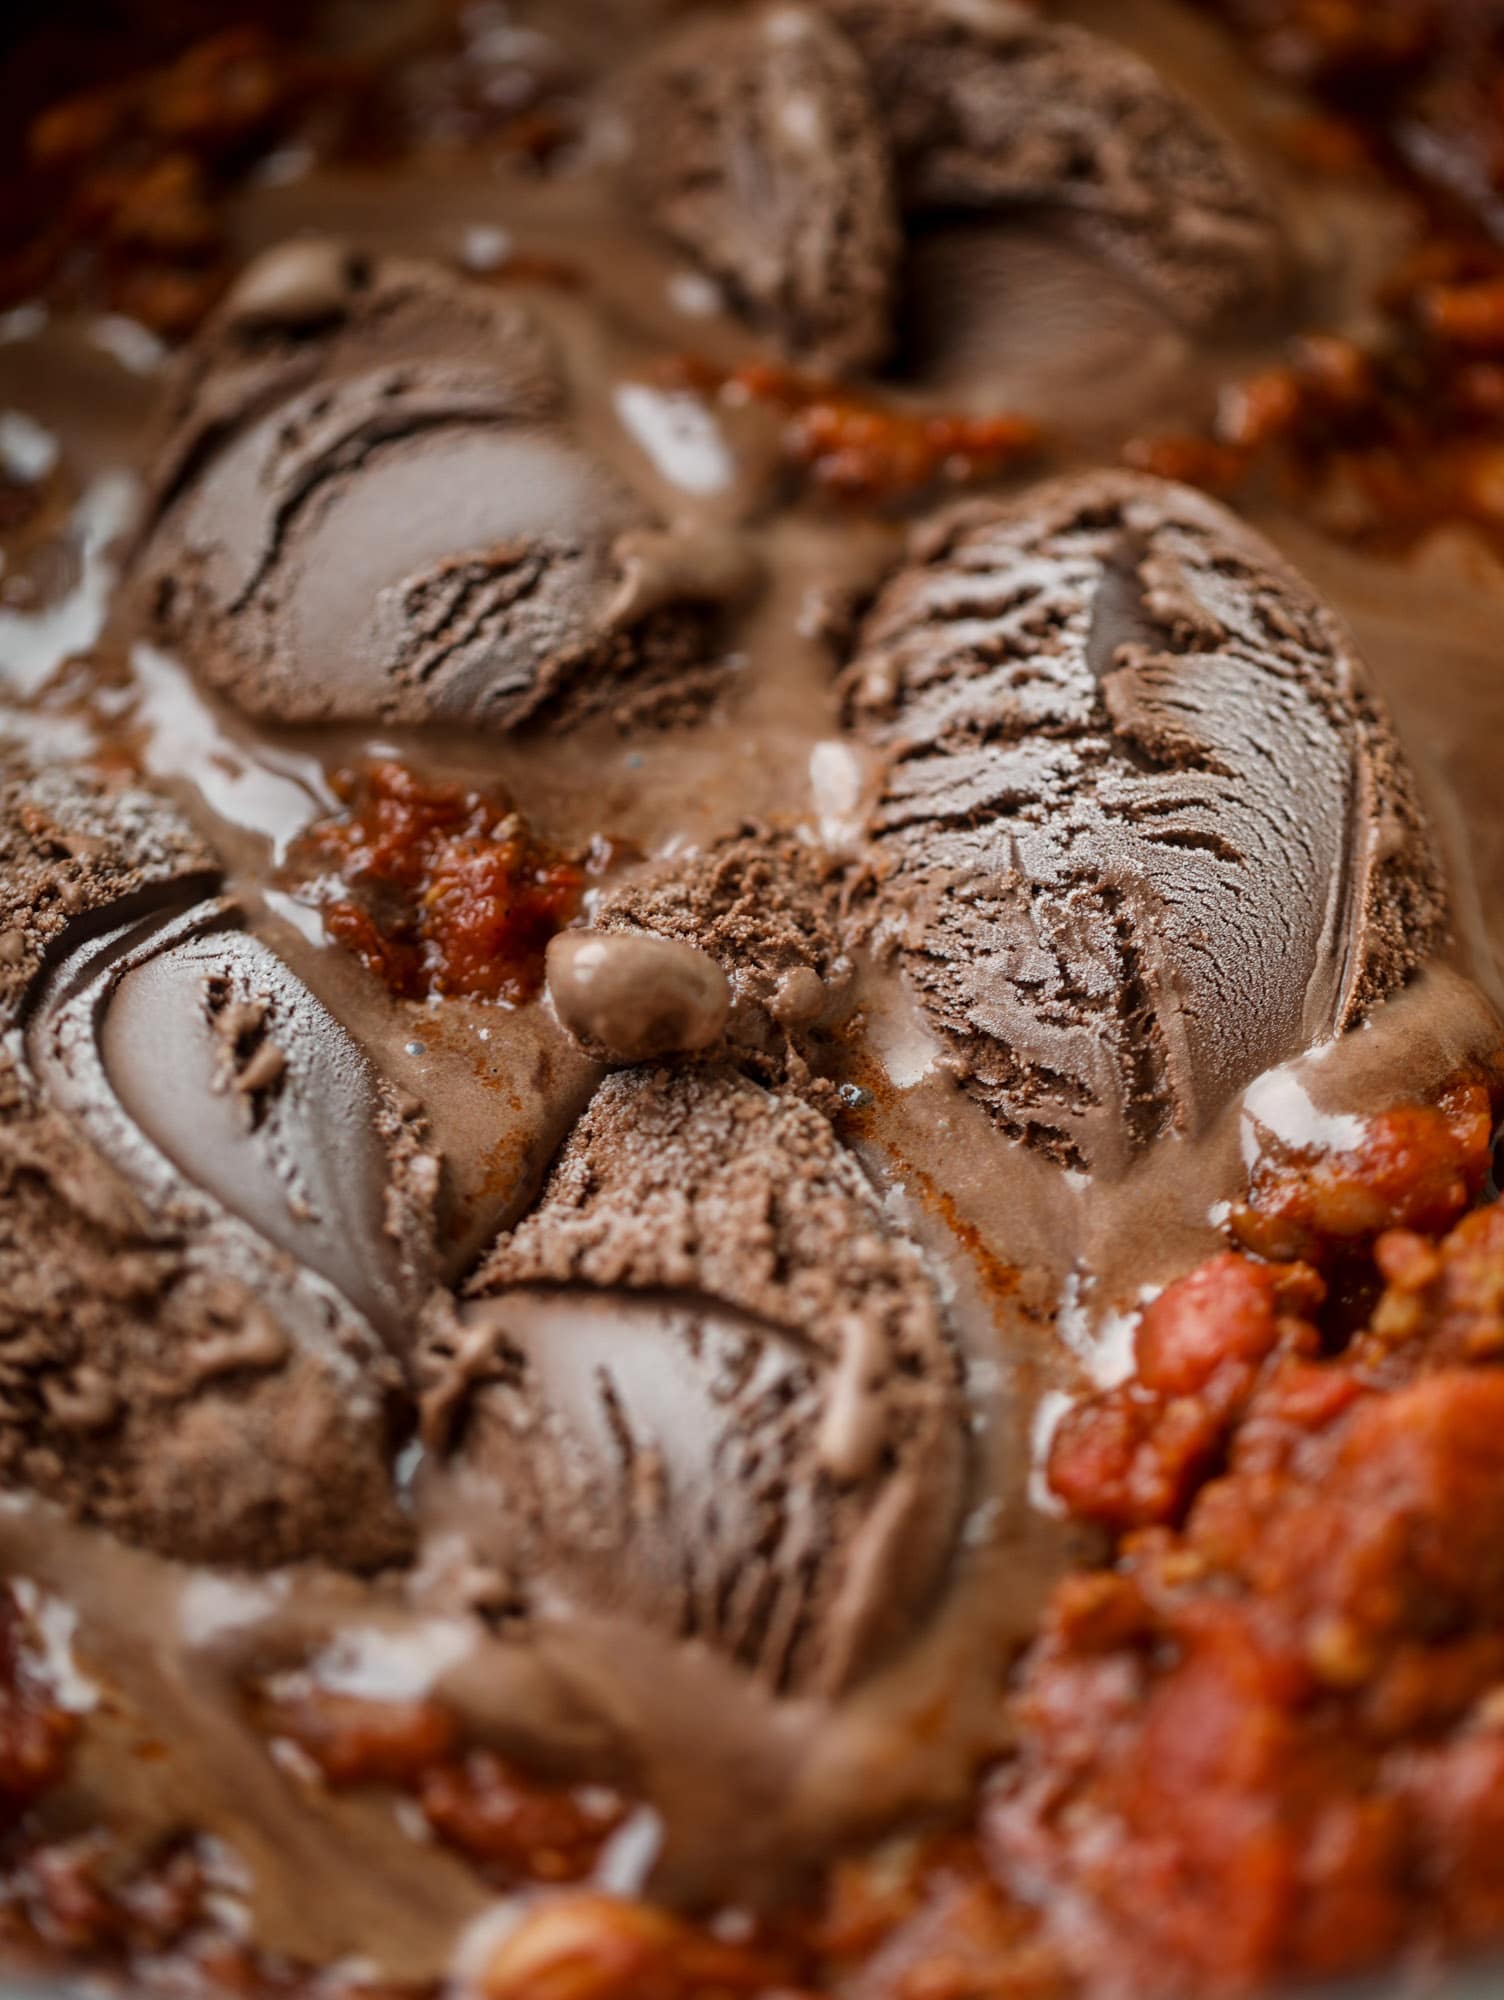 这种火冰辣椒含有一种秘密成分，使其口感醇厚、柔滑、美味至极。黑巧克力冰淇淋在上桌前搅拌，增加了一种疯狂的深度口味，同时给你最喜欢的碗带来了丰富的口感。你一定要试试!I howteats.com #chili #recipe #ice #cream #chili #bar